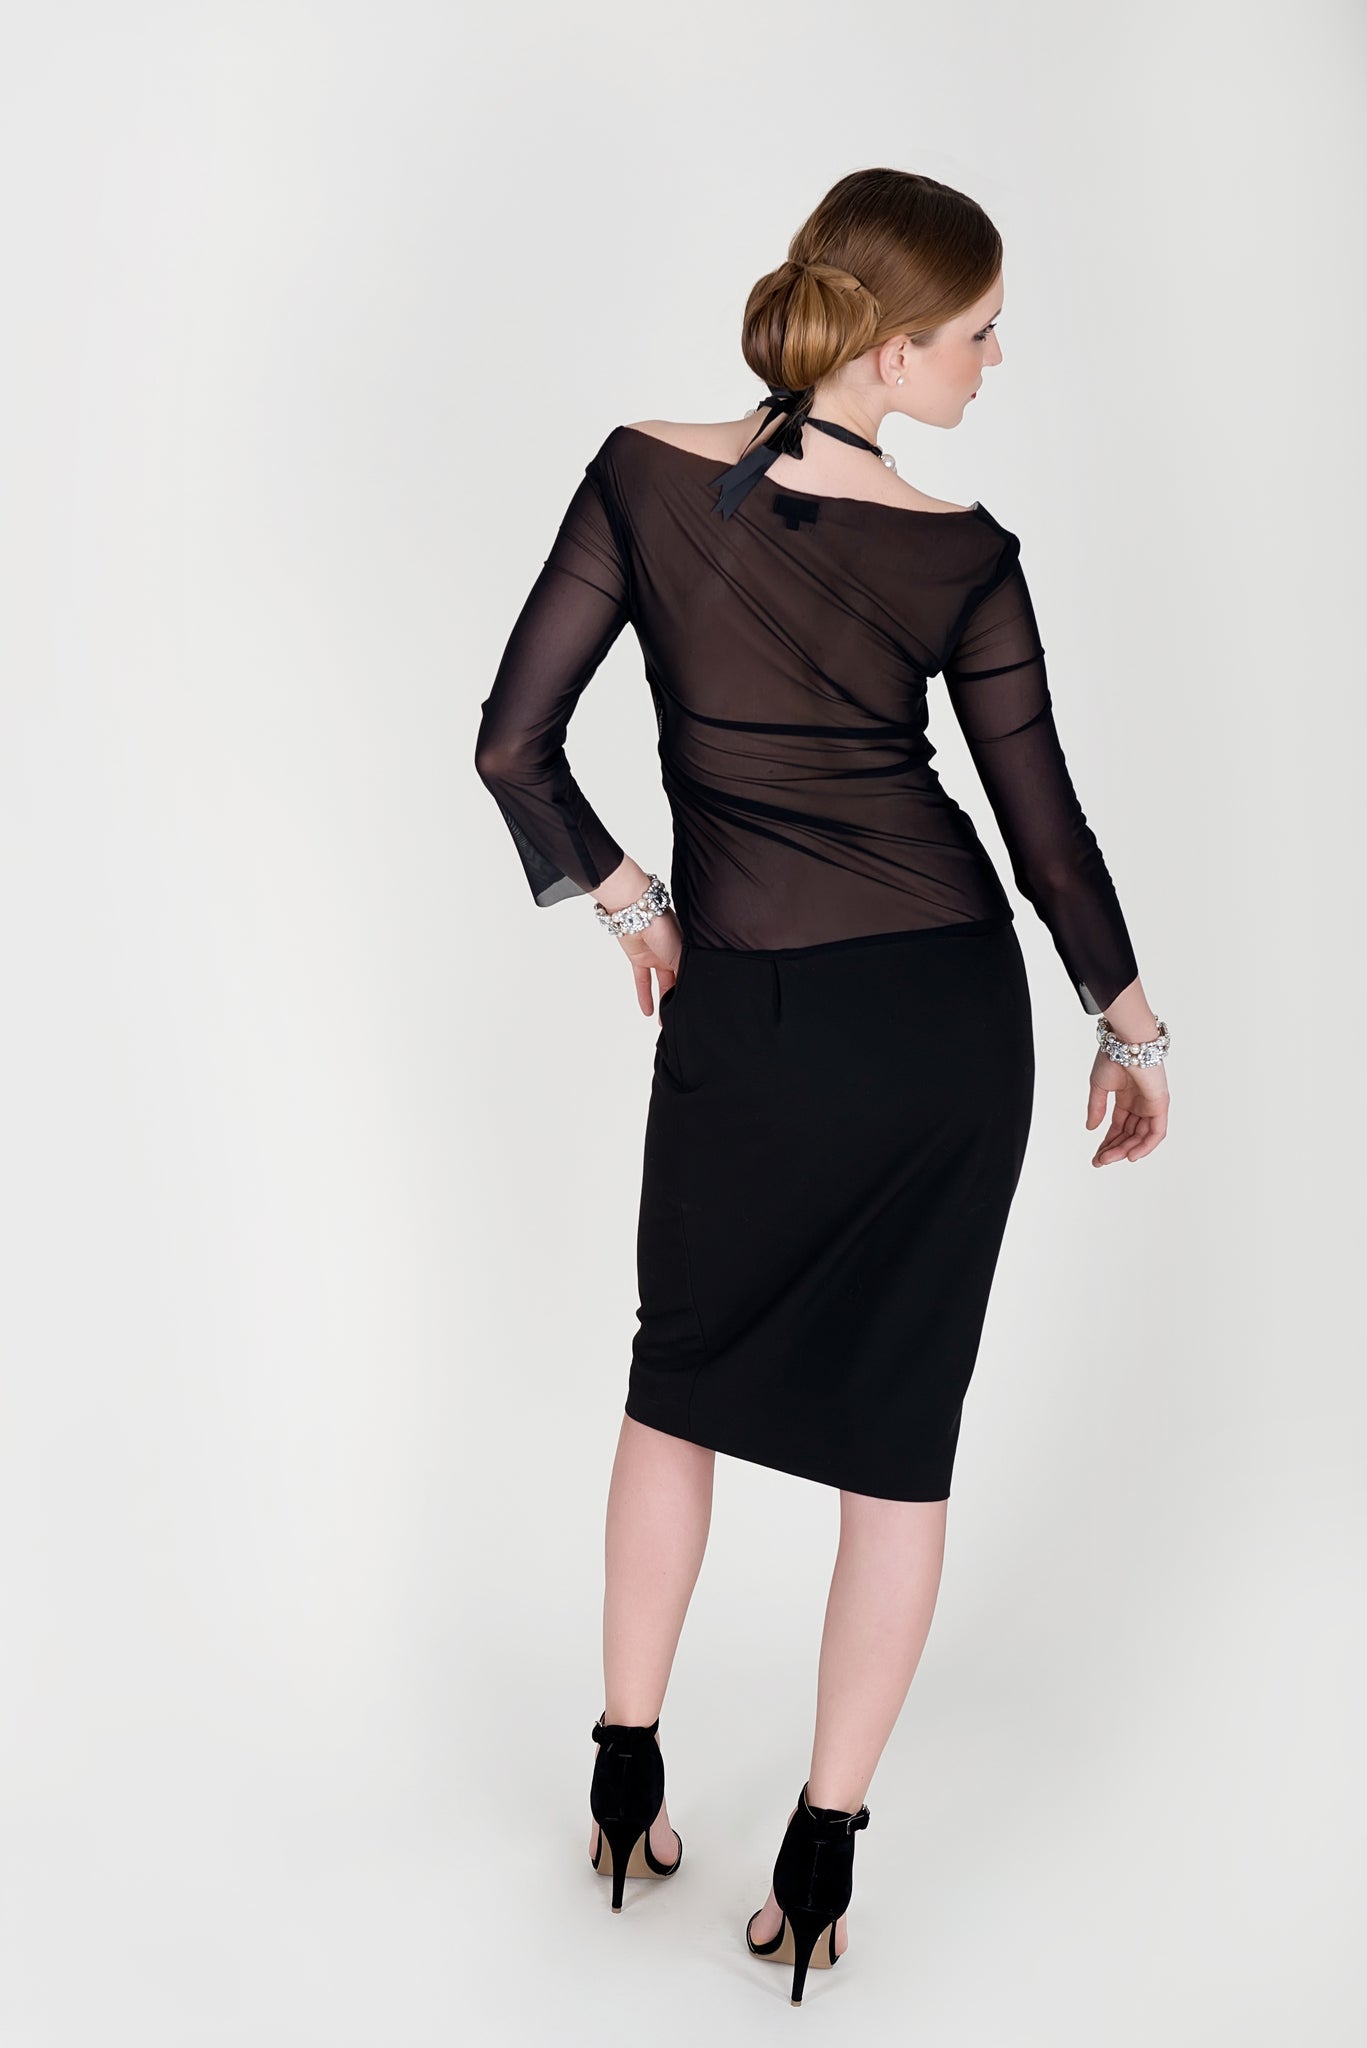 Cocktailkleid mit Netz-Einsatz, halbtransparent, extravagant - Kleid - 7dresses